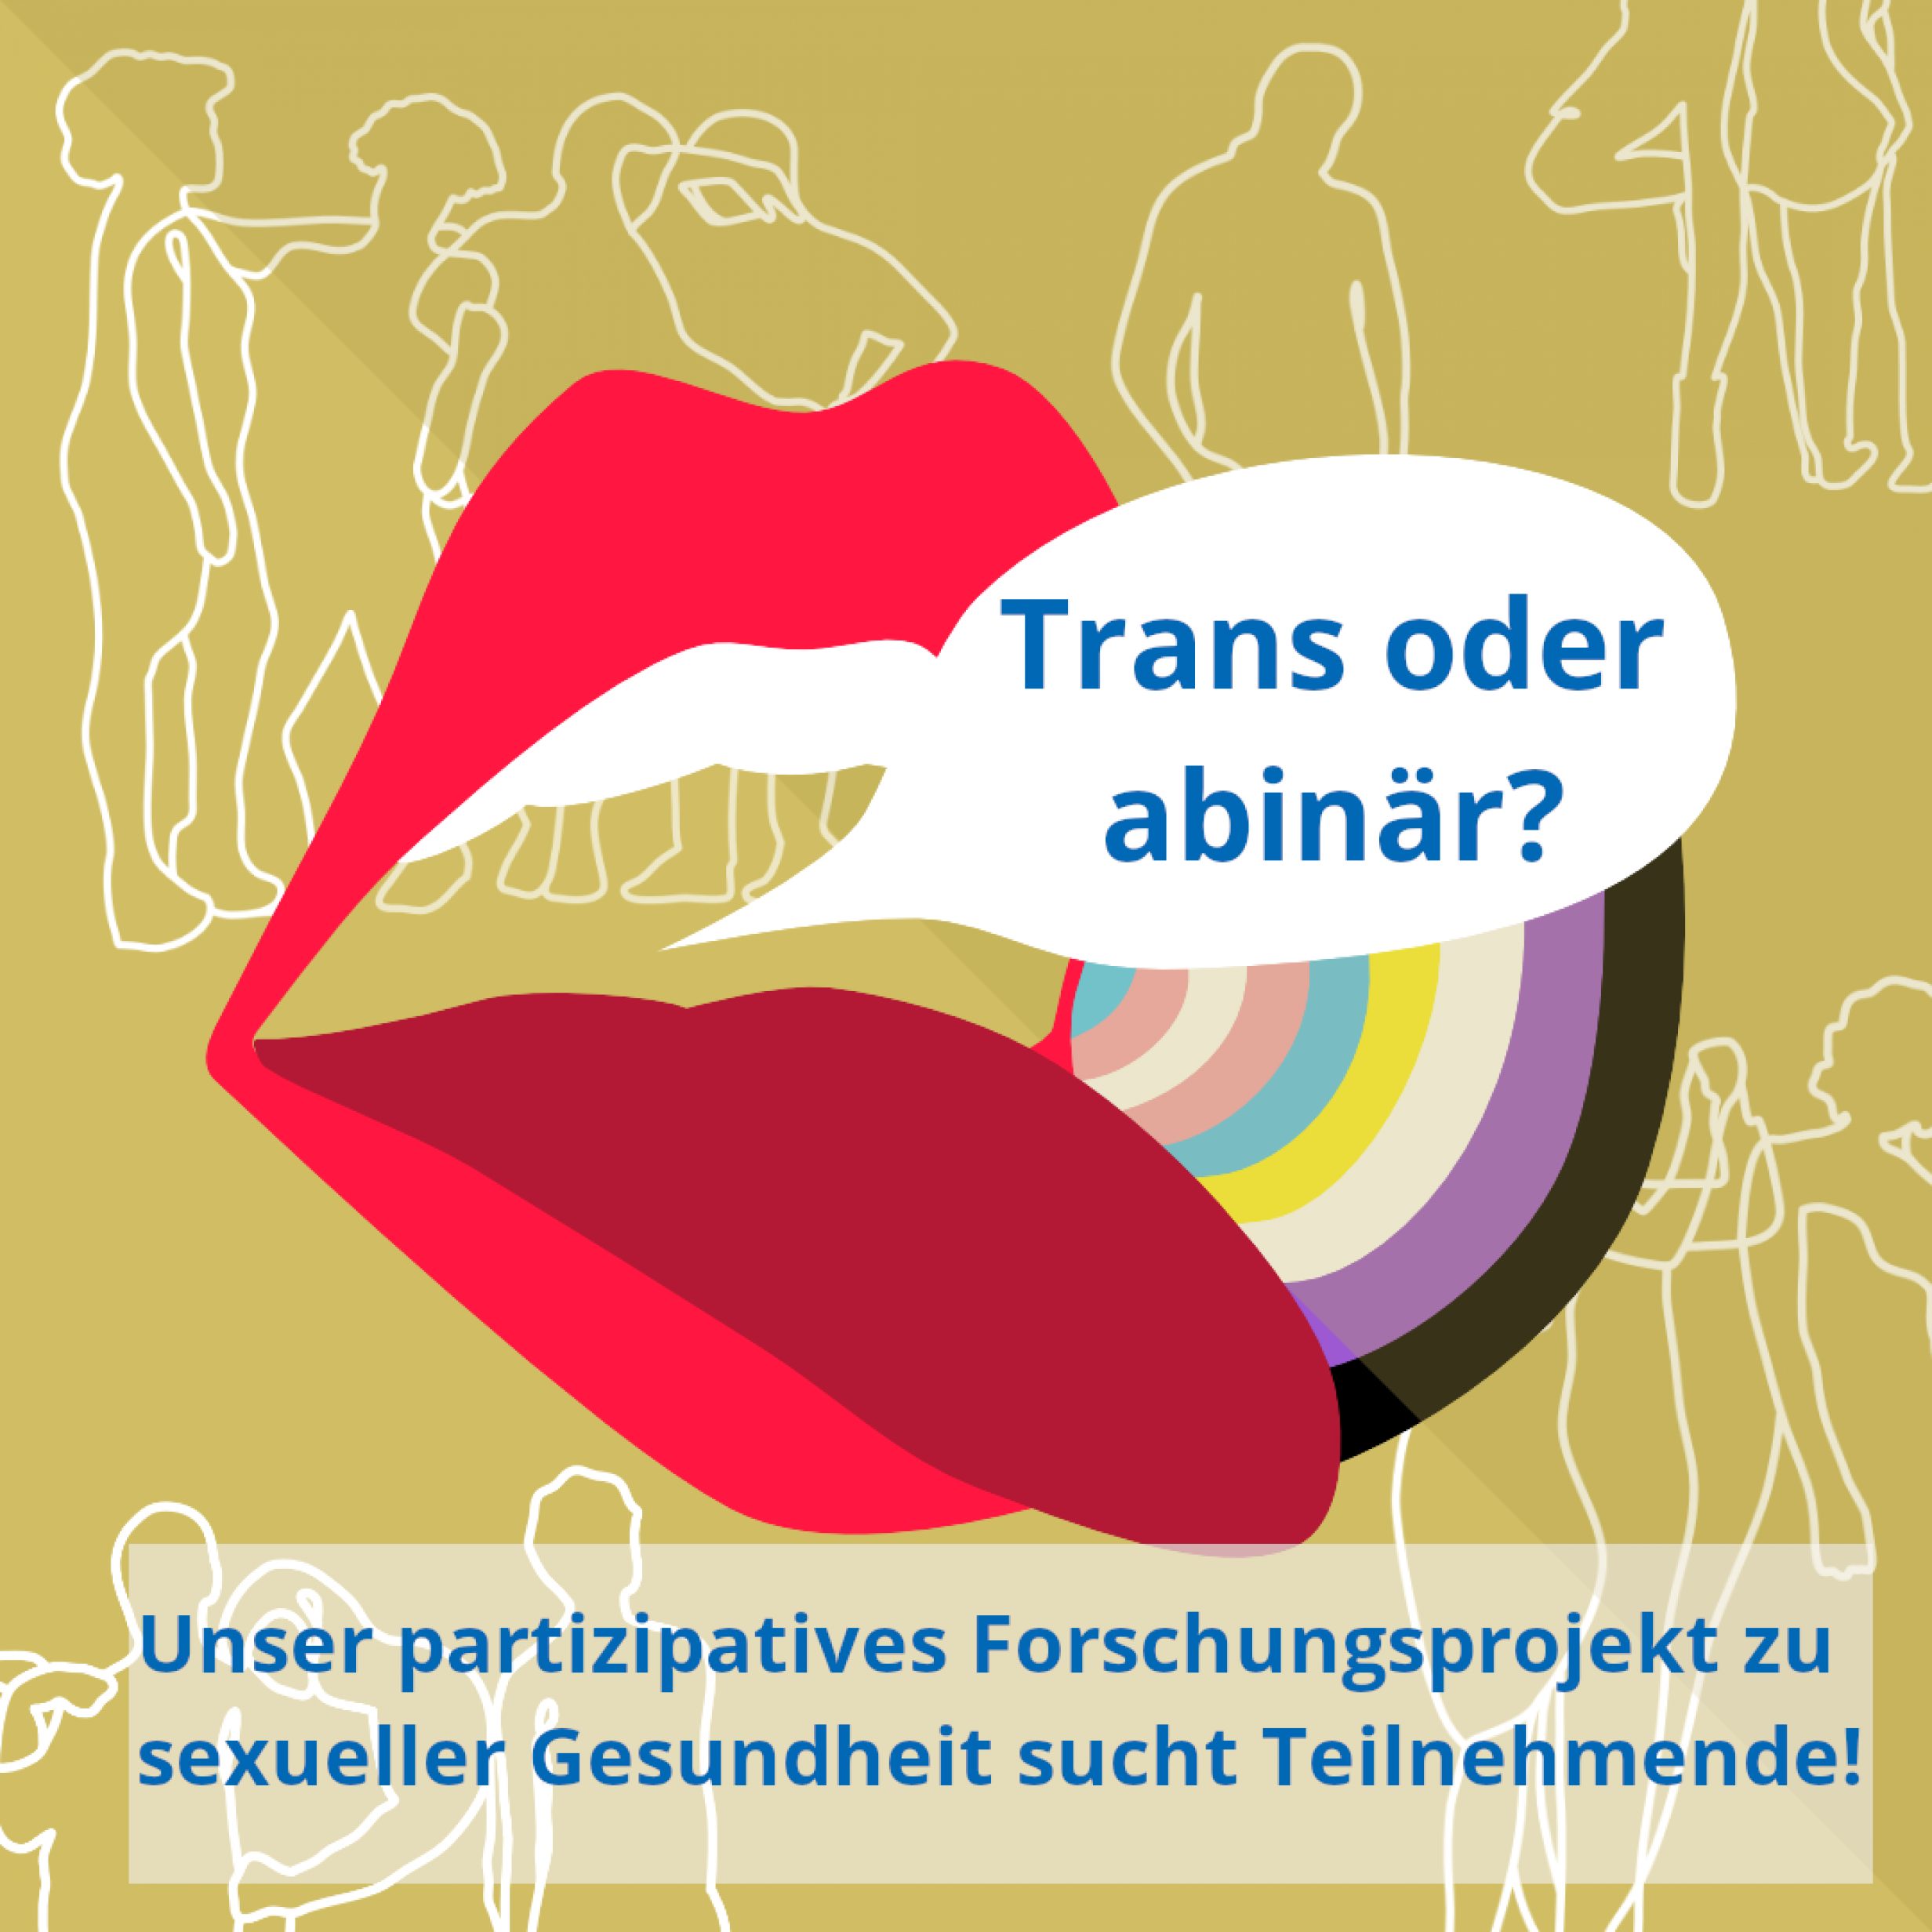 Bild zeigt eine Grafik mit Lippen und einer Sprechblase, darin steht der Text: –	Trans und/oder abinär? Unser partizipatives Forschungsprojekt zur sexuellen Gesundheit sucht Teilnehmende!